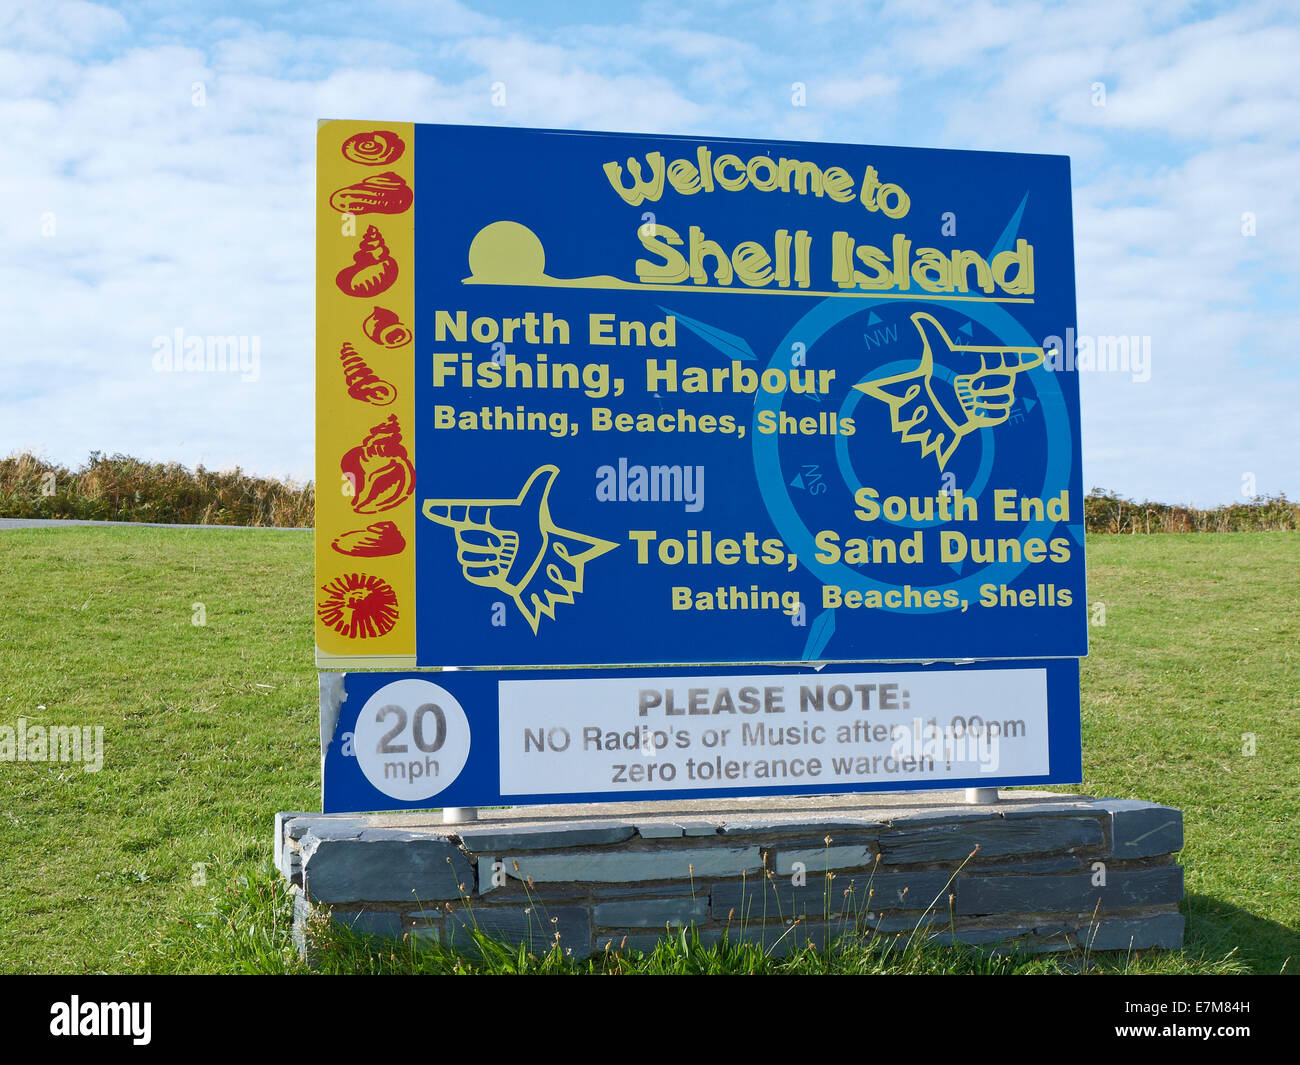 Willkommen Sie bei Shell Island Campingplatz Zeichen Wales UK Stockfoto